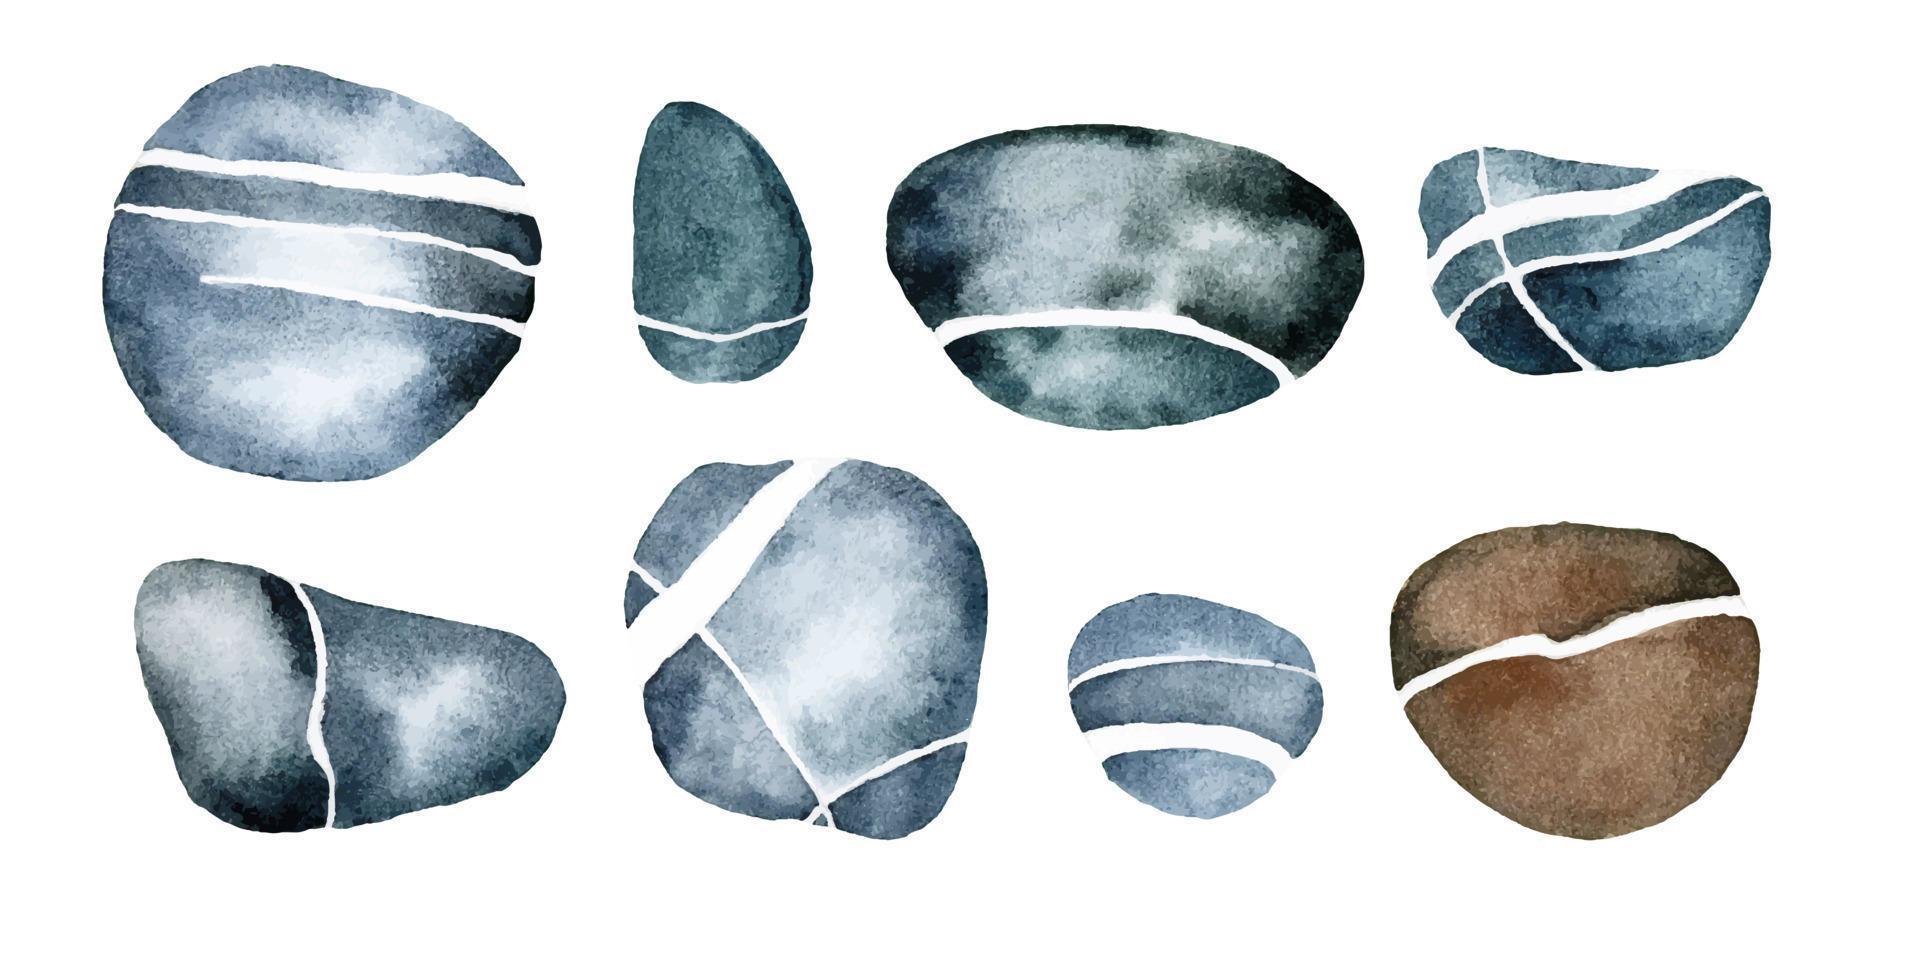 desenho em aquarela. conjunto de pedras do mar de cor cinza-azulada com veias brancas, listras. isolado em pedras de fundo branco, seixos do rio vetor